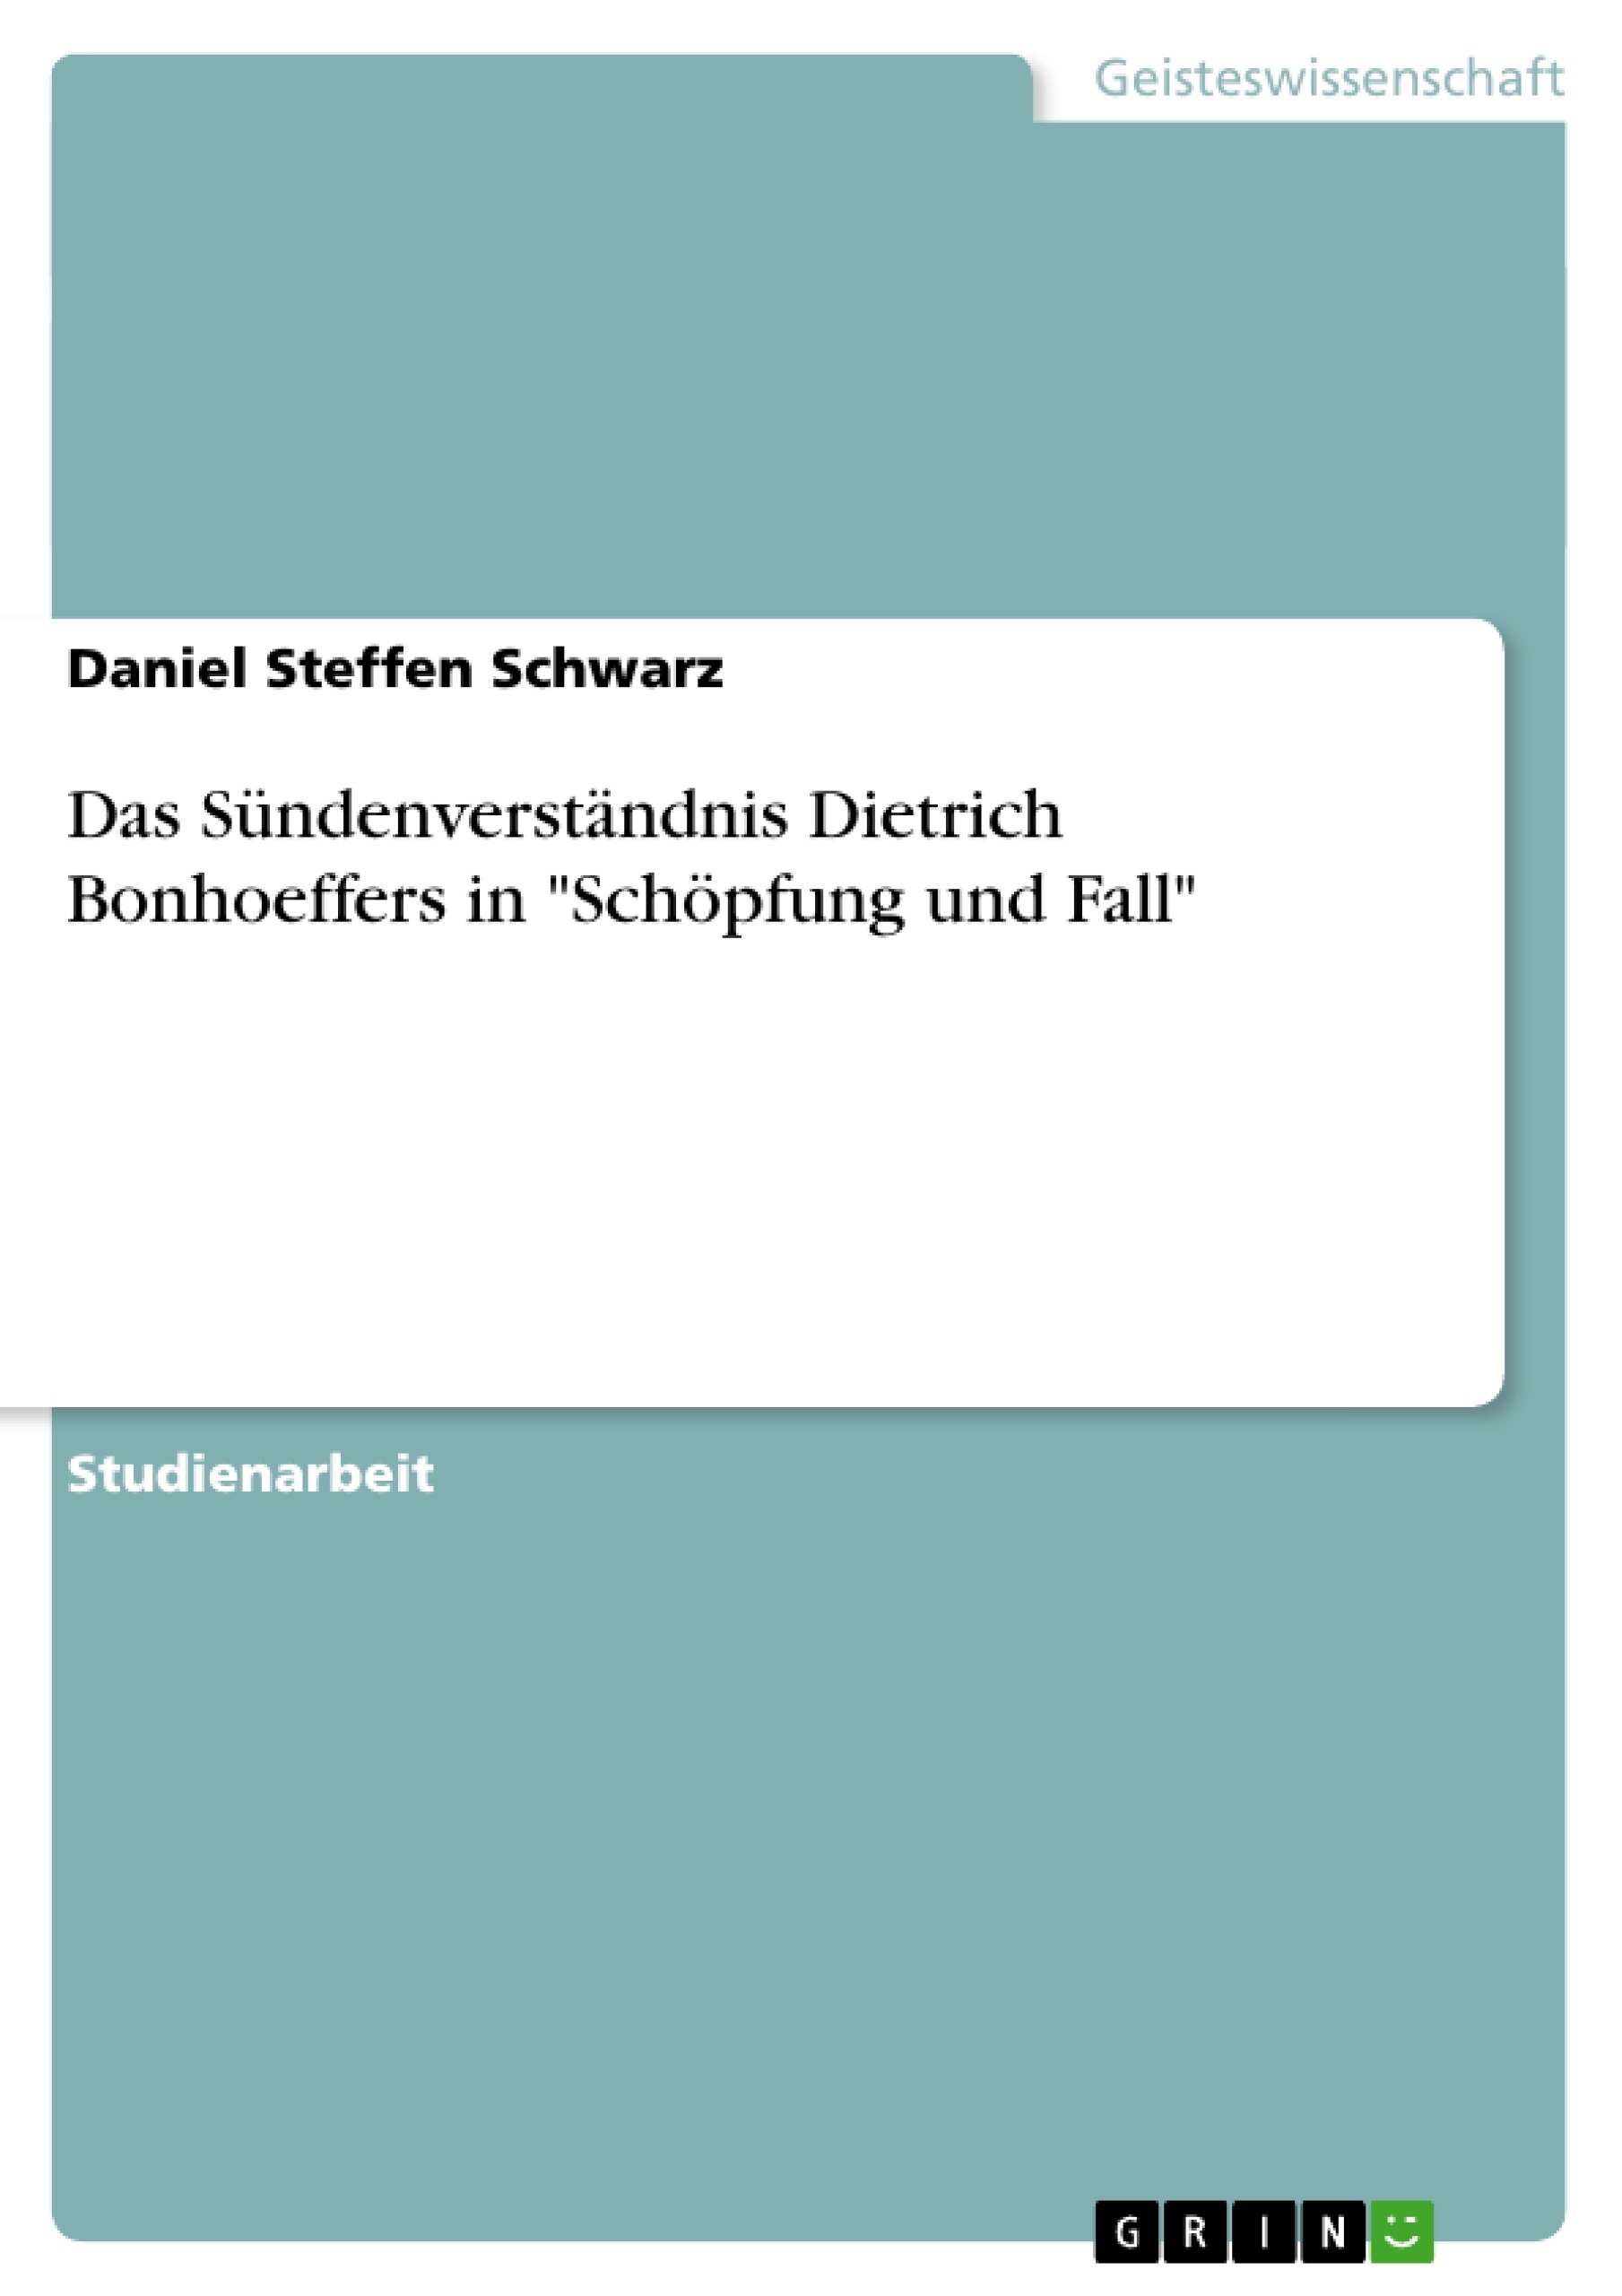 Titre: Das Sündenverständnis Dietrich Bonhoeffers in "Schöpfung und Fall"